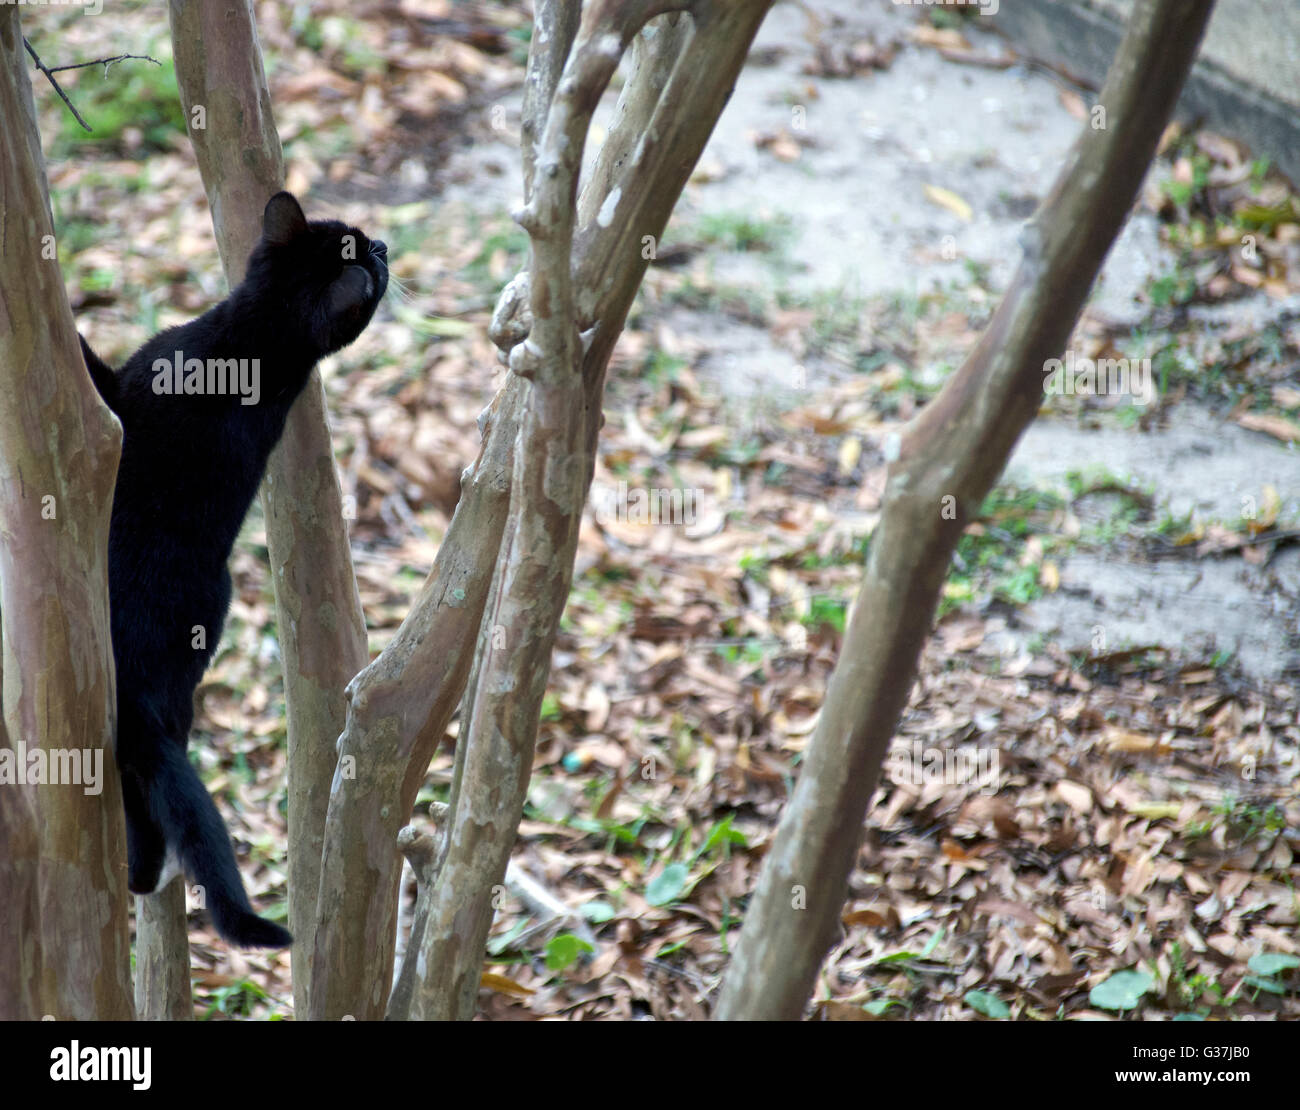 Une semi-feral cat escalade un arbre, dans la poursuite d'un oiseau. Banque D'Images